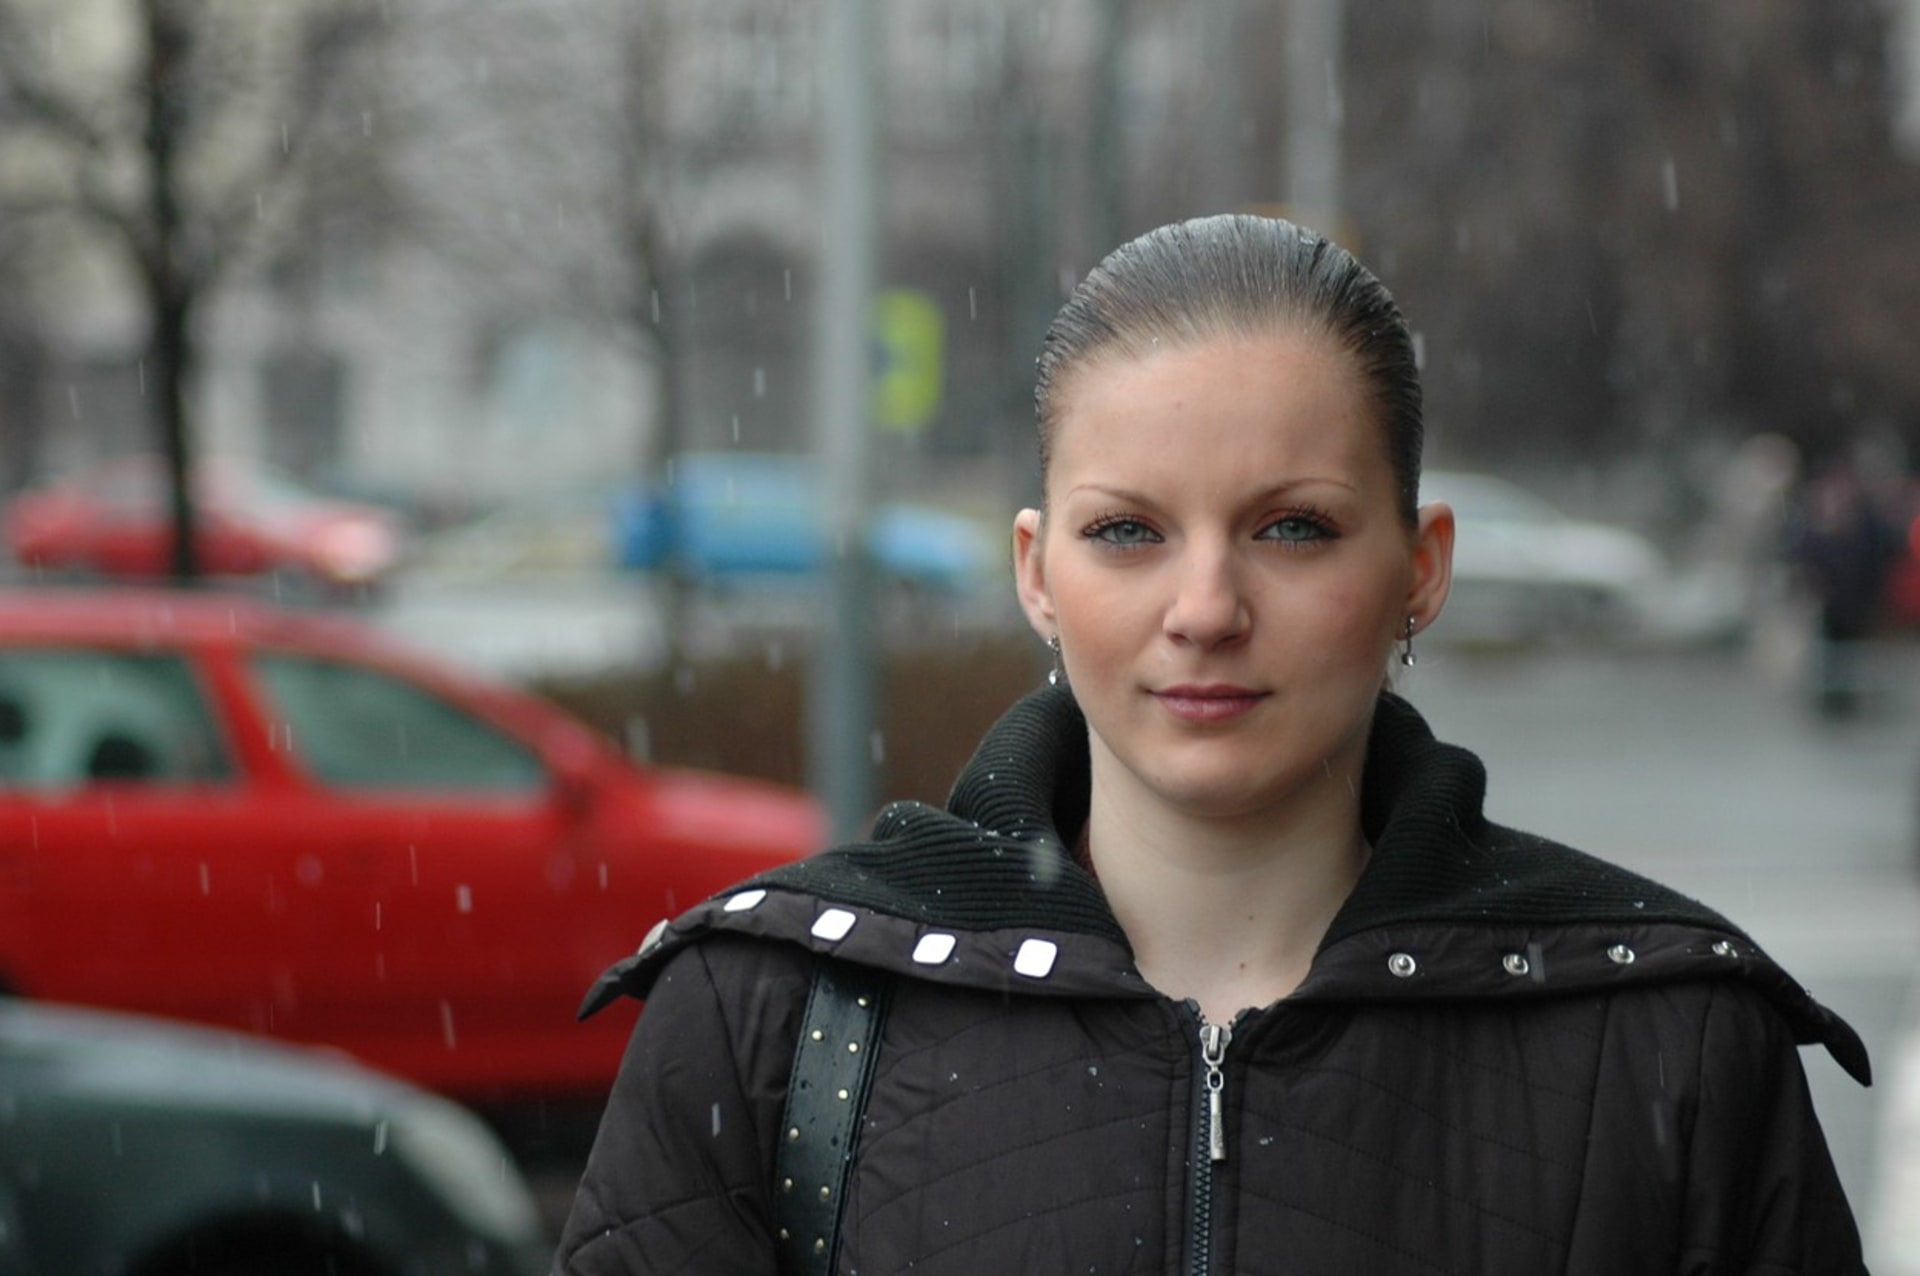 Tehdy 18letá Aneta Tokarčíková odložila dítě do ostravského babyboxu v lednu 2009. Poté se stala první matkou odloženého dítěte, která vystoupila z anonymity.